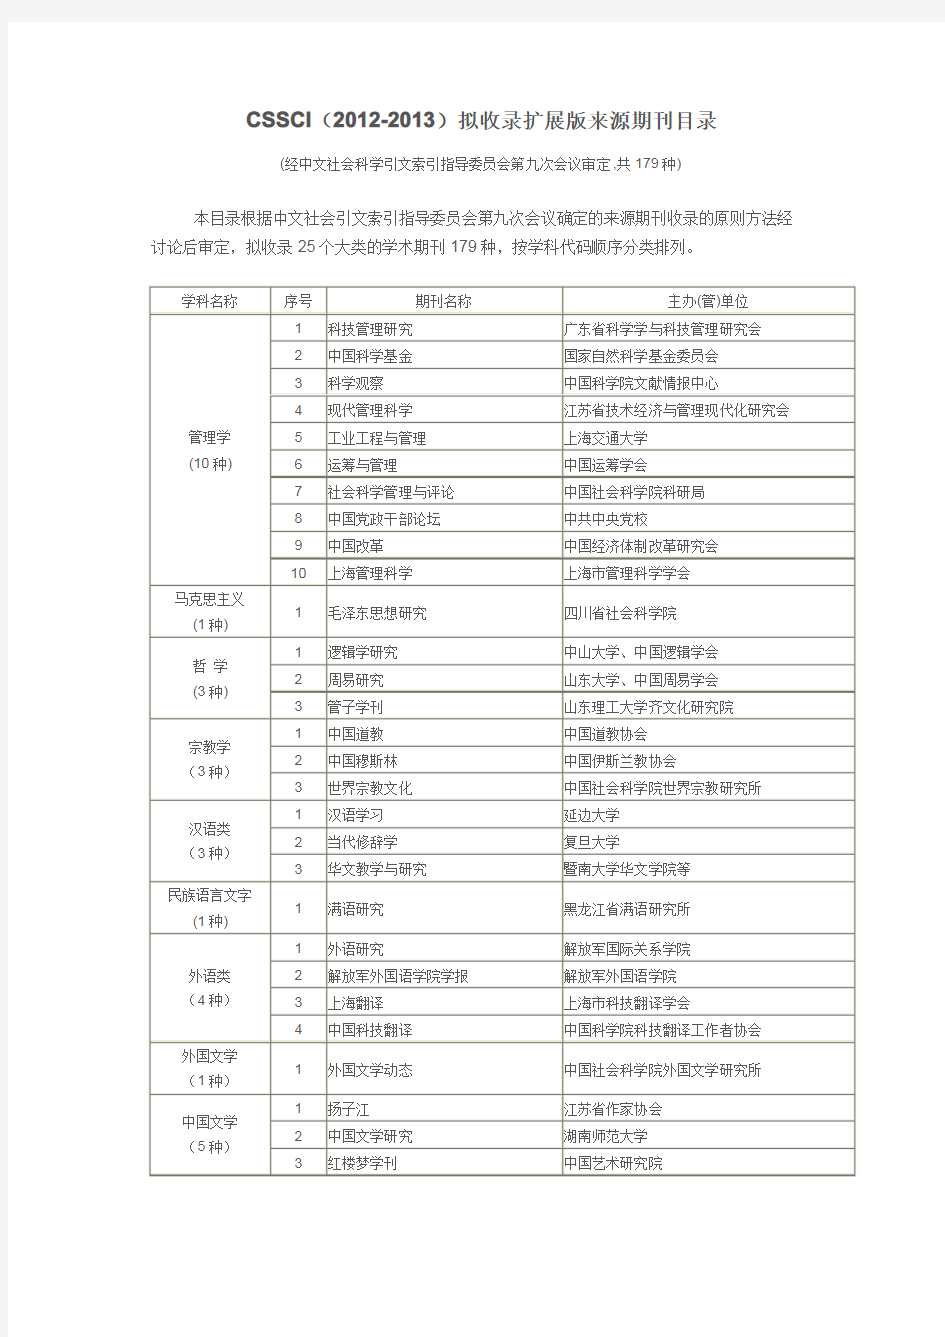 中文期刊分类扩展版